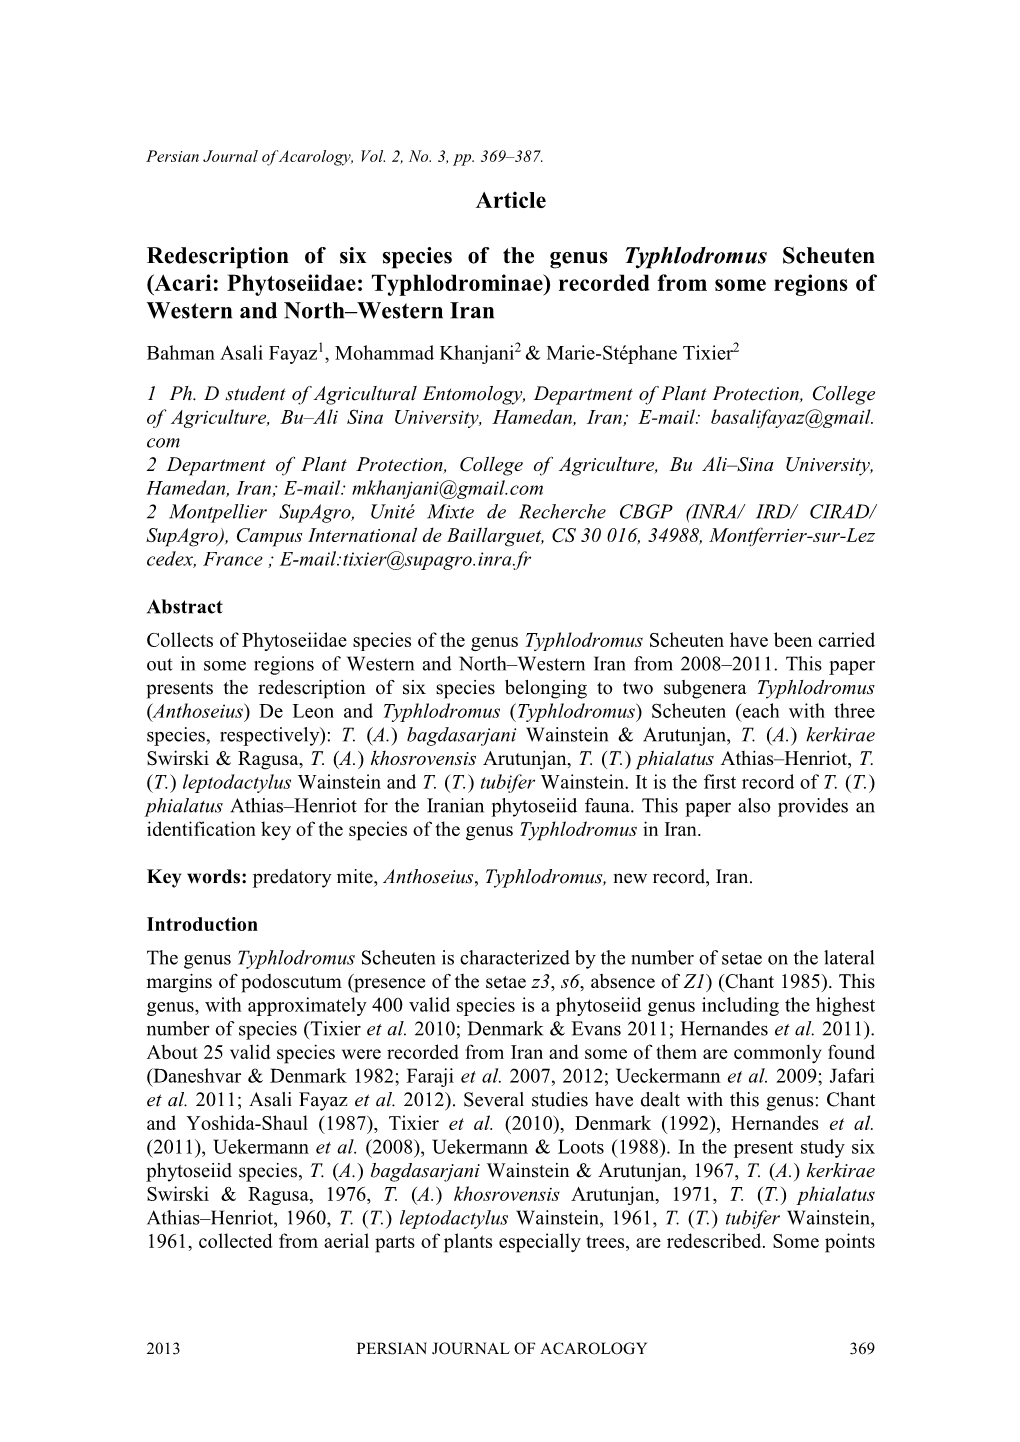 Article Redescription of Six Species of the Genus Typhlodromus Scheuten